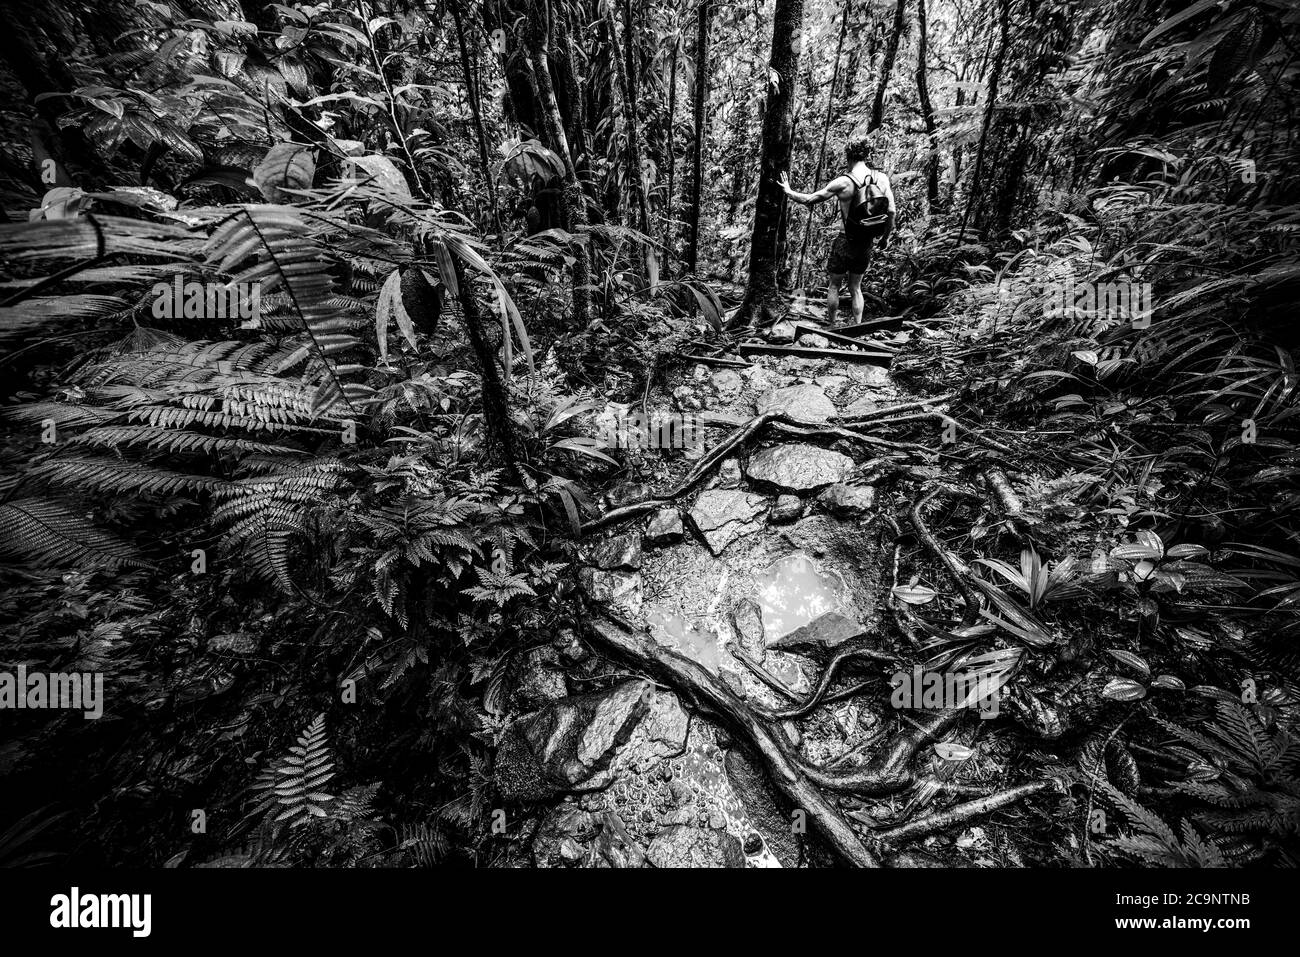 Homme explorant la jungle en Guadeloupe, antilles françaises. Antilles néerlandaises, Caraïbes. Effet noir et blanc Banque D'Images